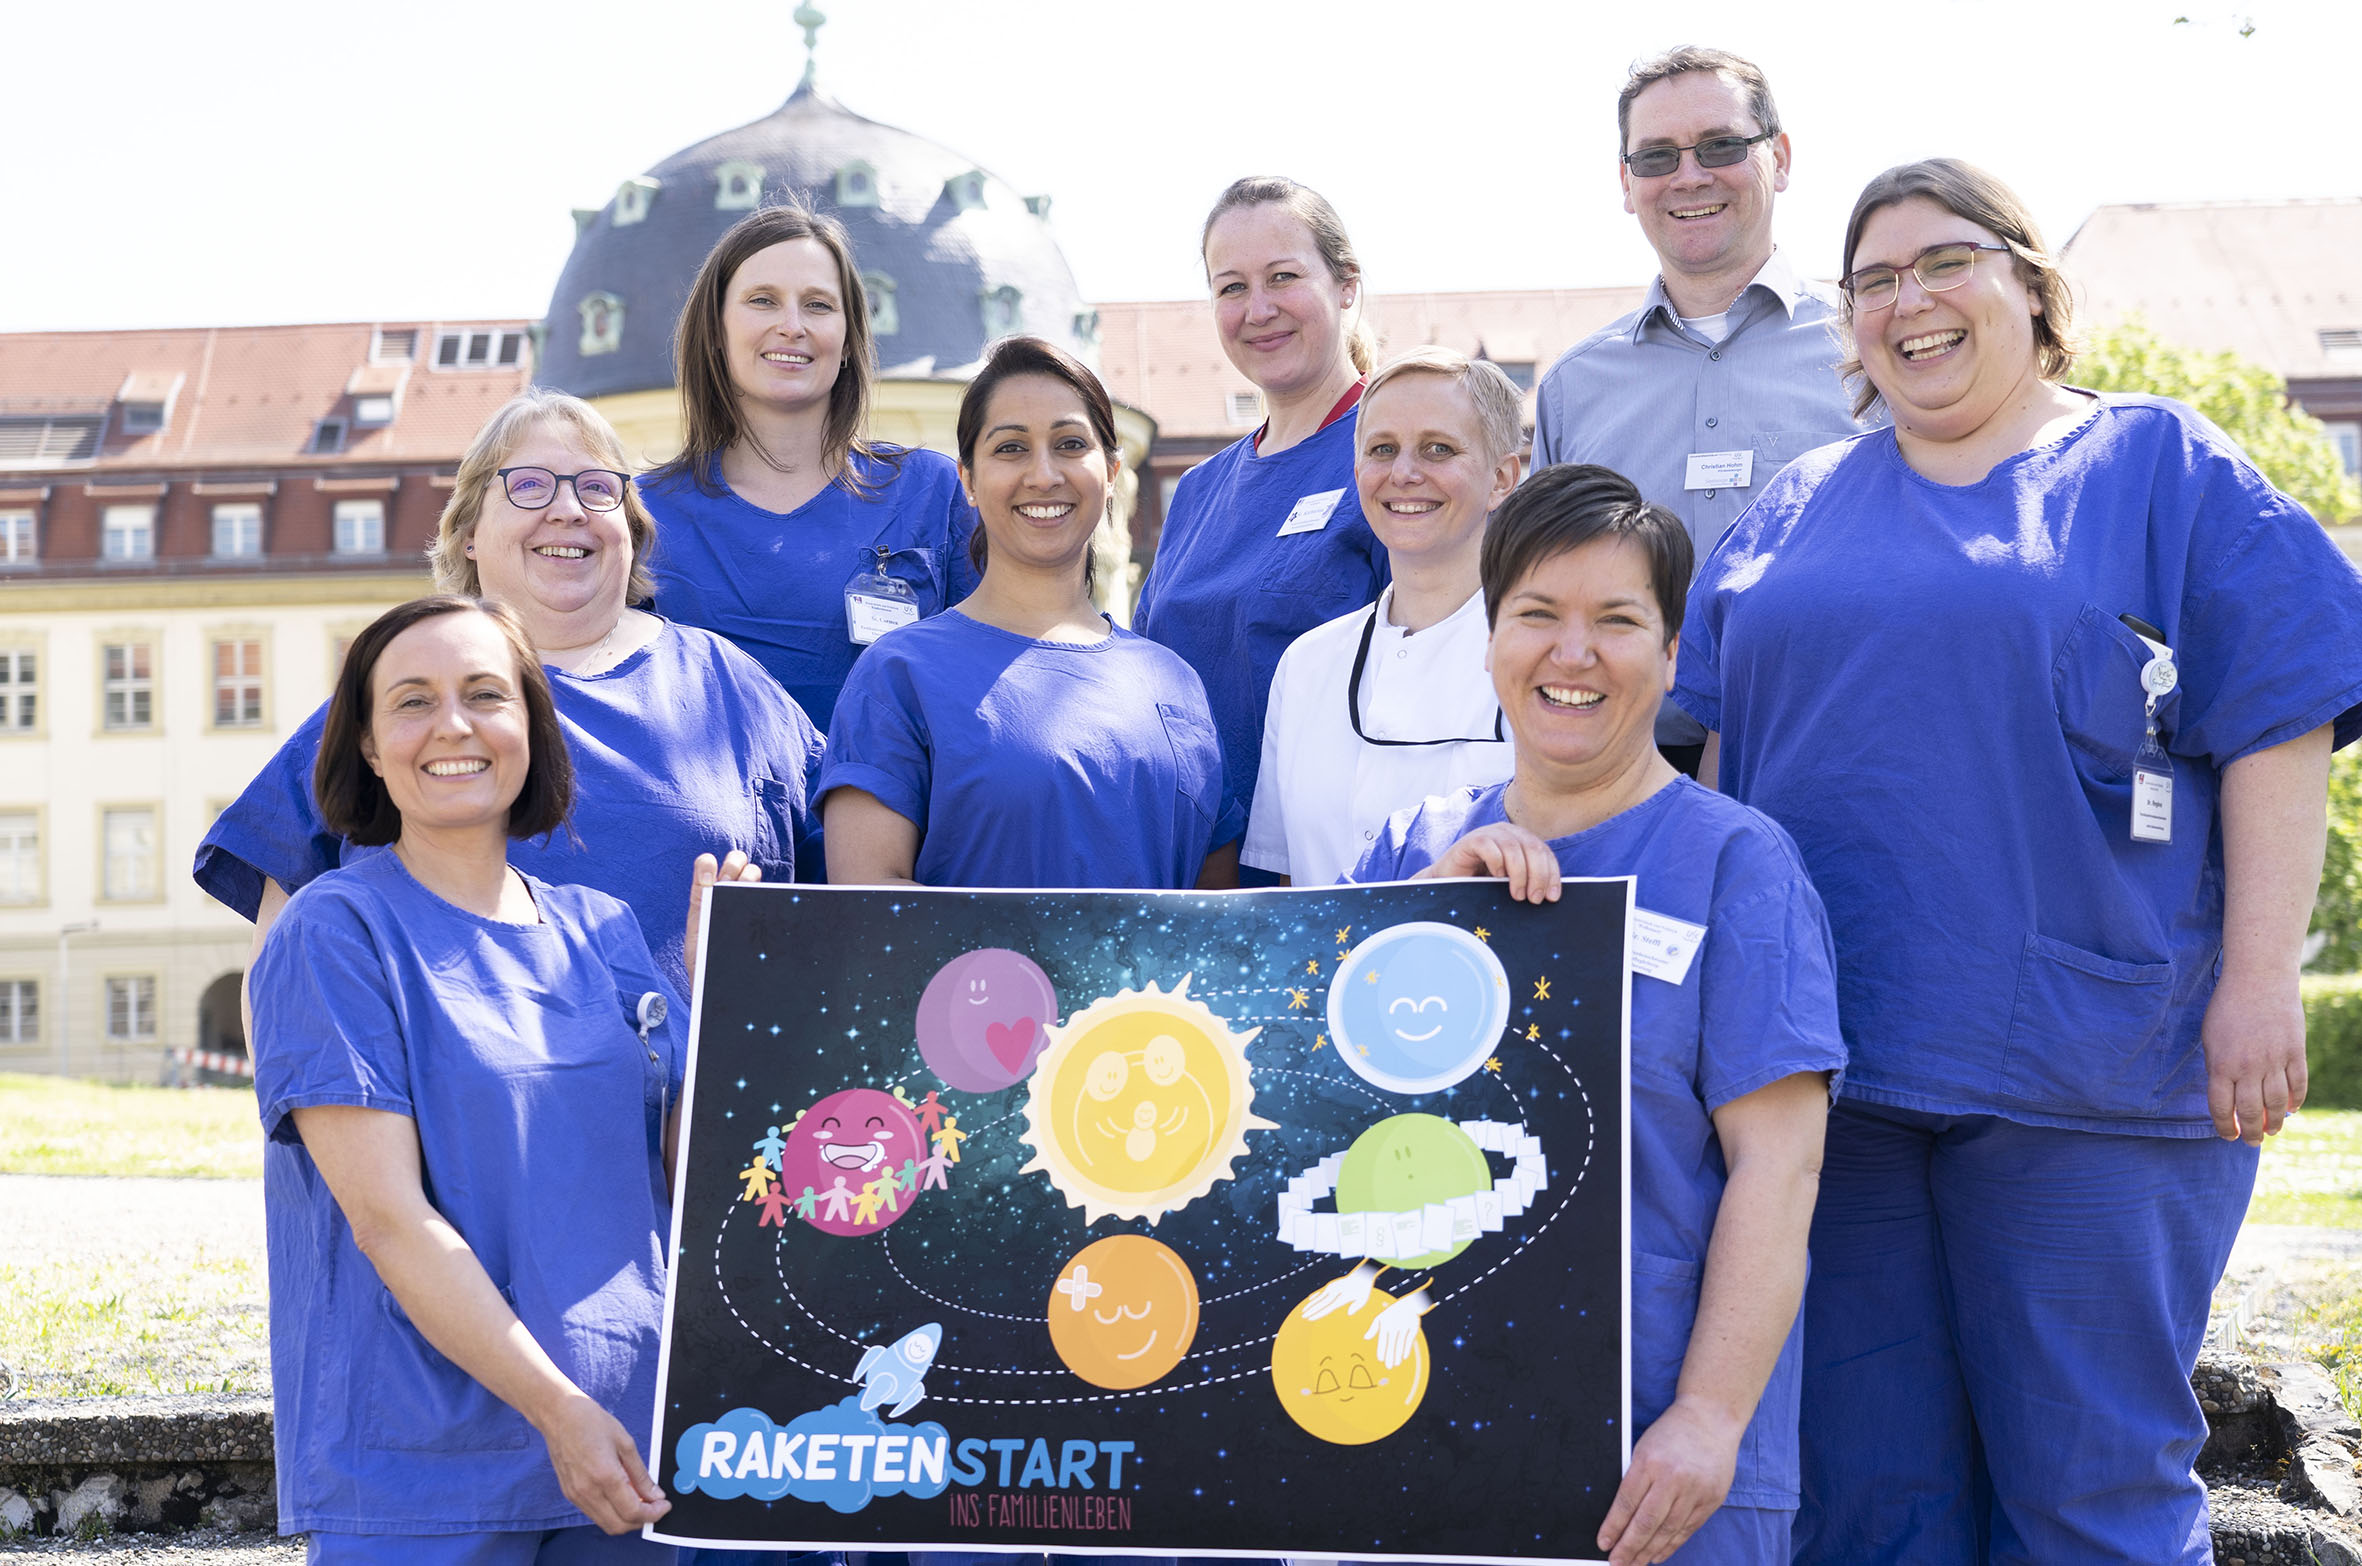 Das Elternberatungsteam der Würzburger Universitäts-Kinderklinik präsentiert ihr neues Kursangebot für Familien mit Frühgeborenen oder kranken Neugeborenen.